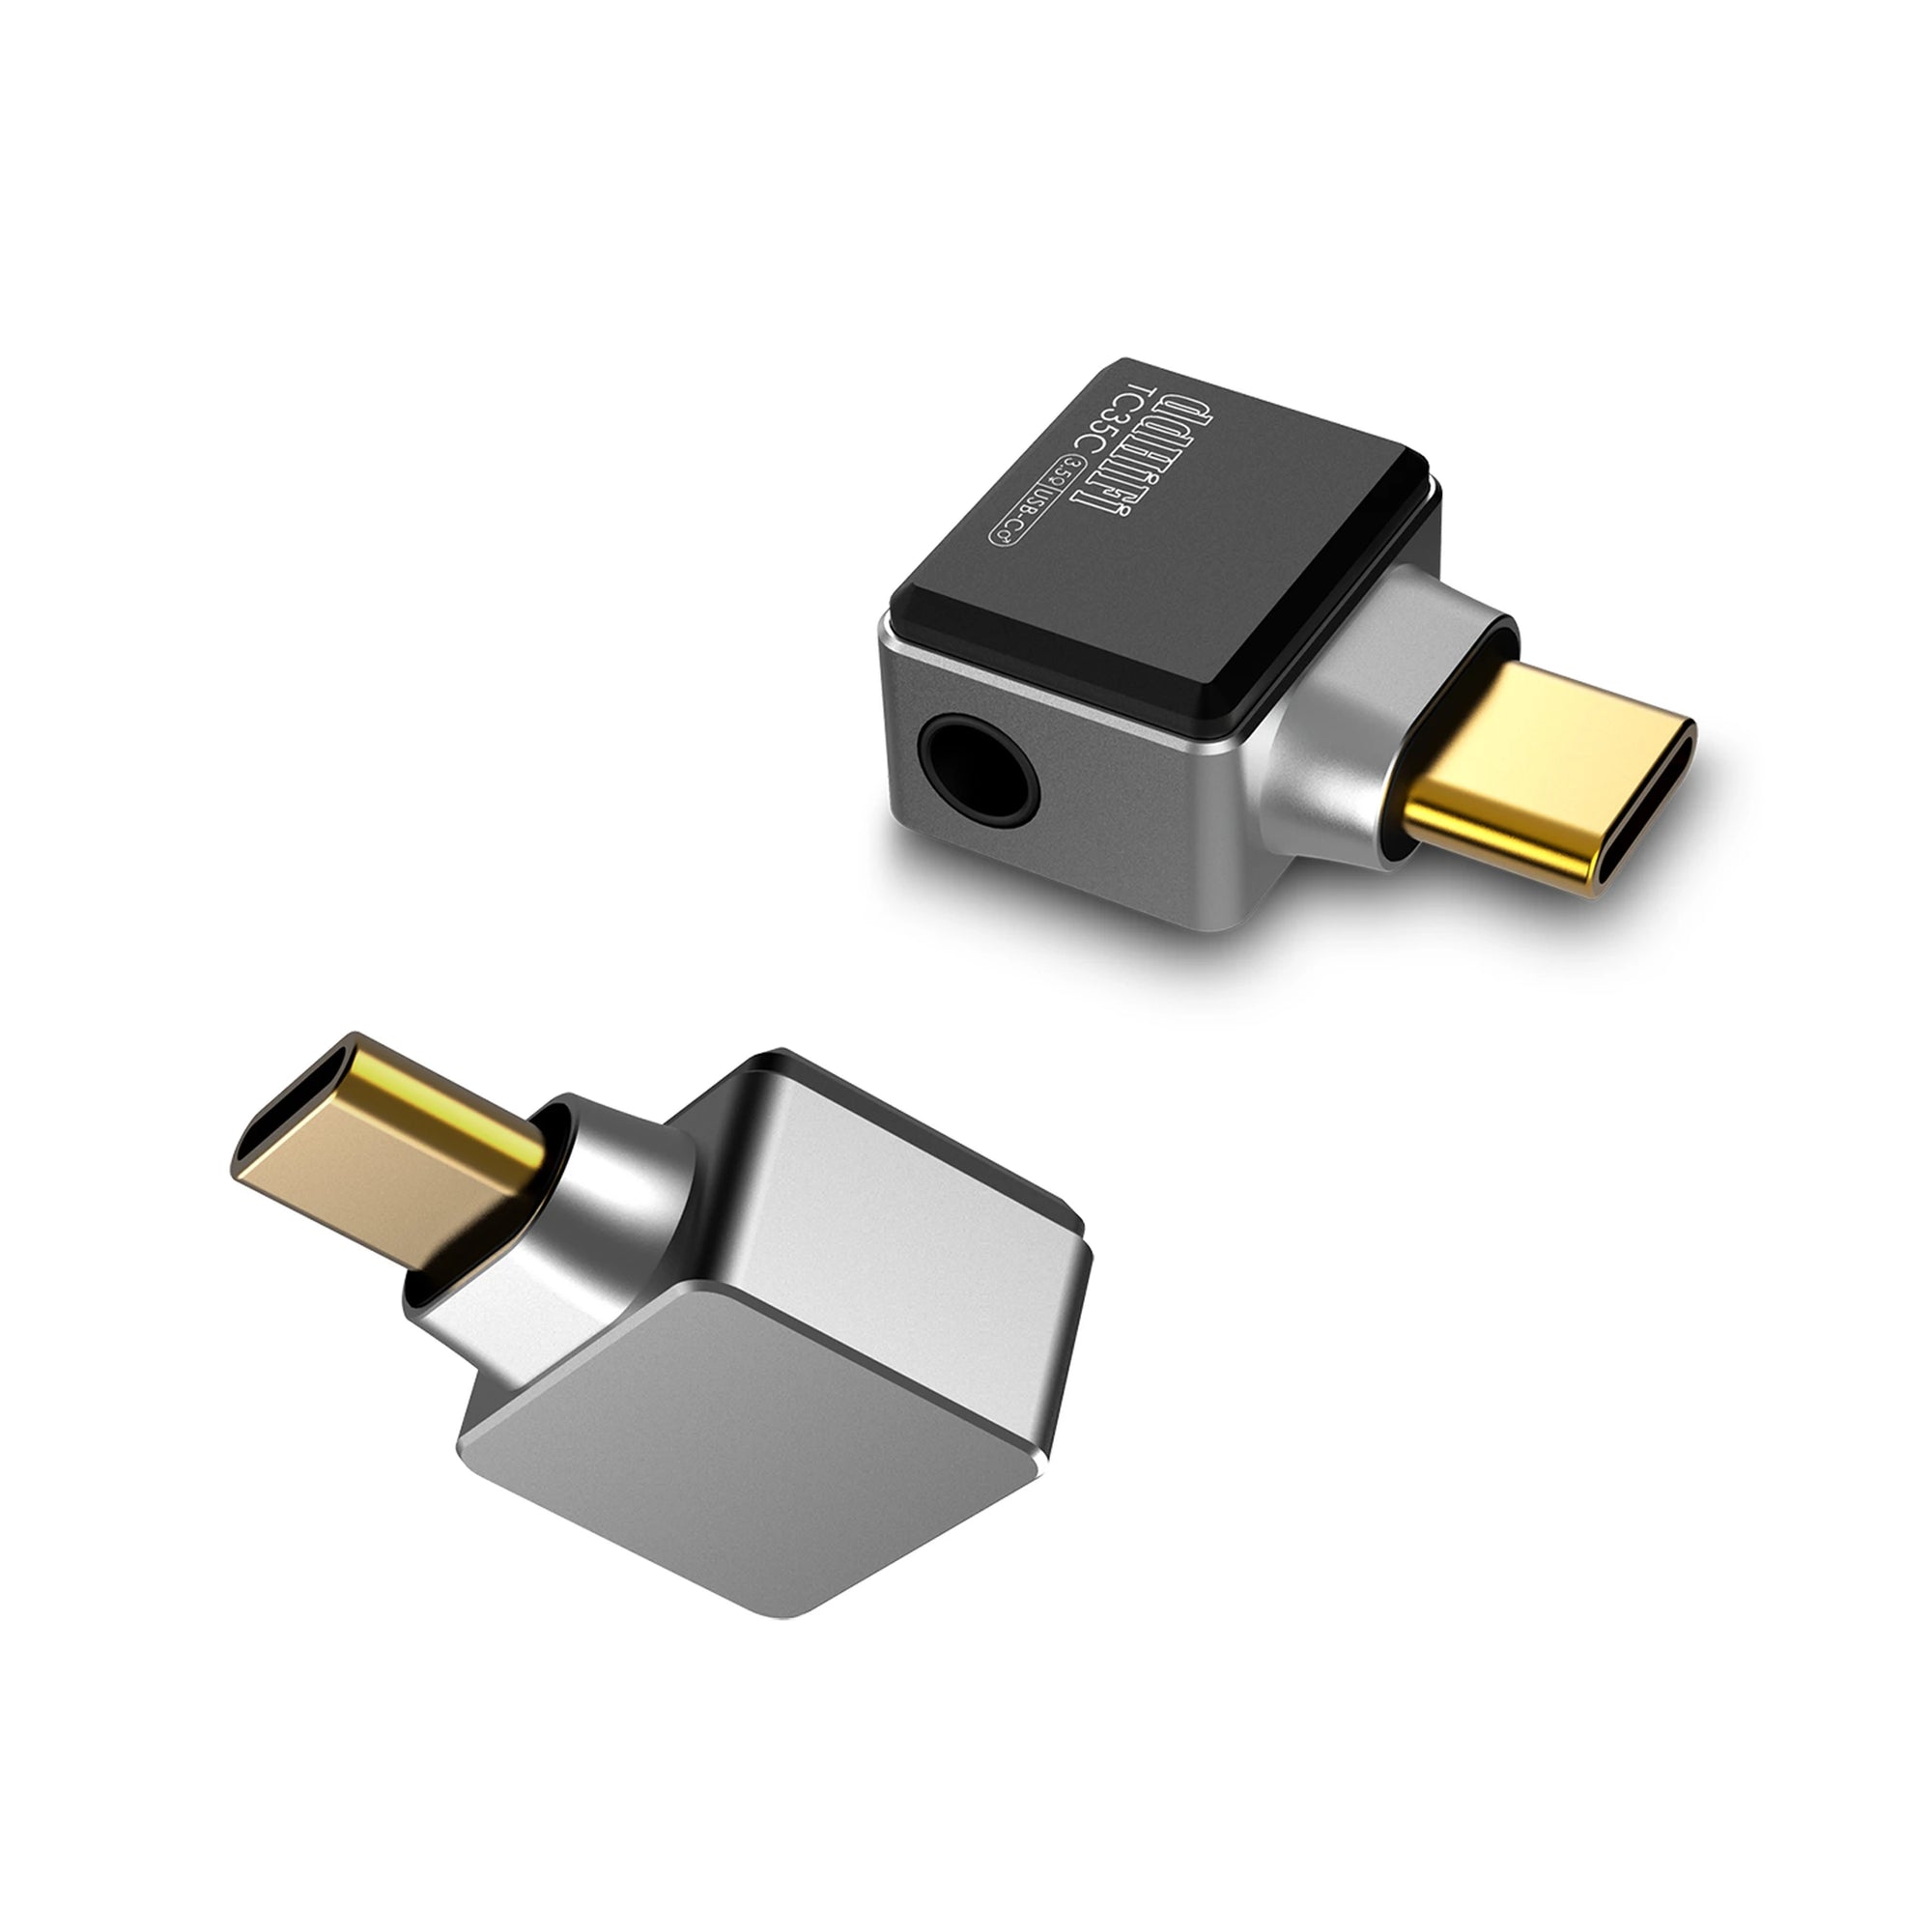 USB-C till 3.5 mm DAC Adapter